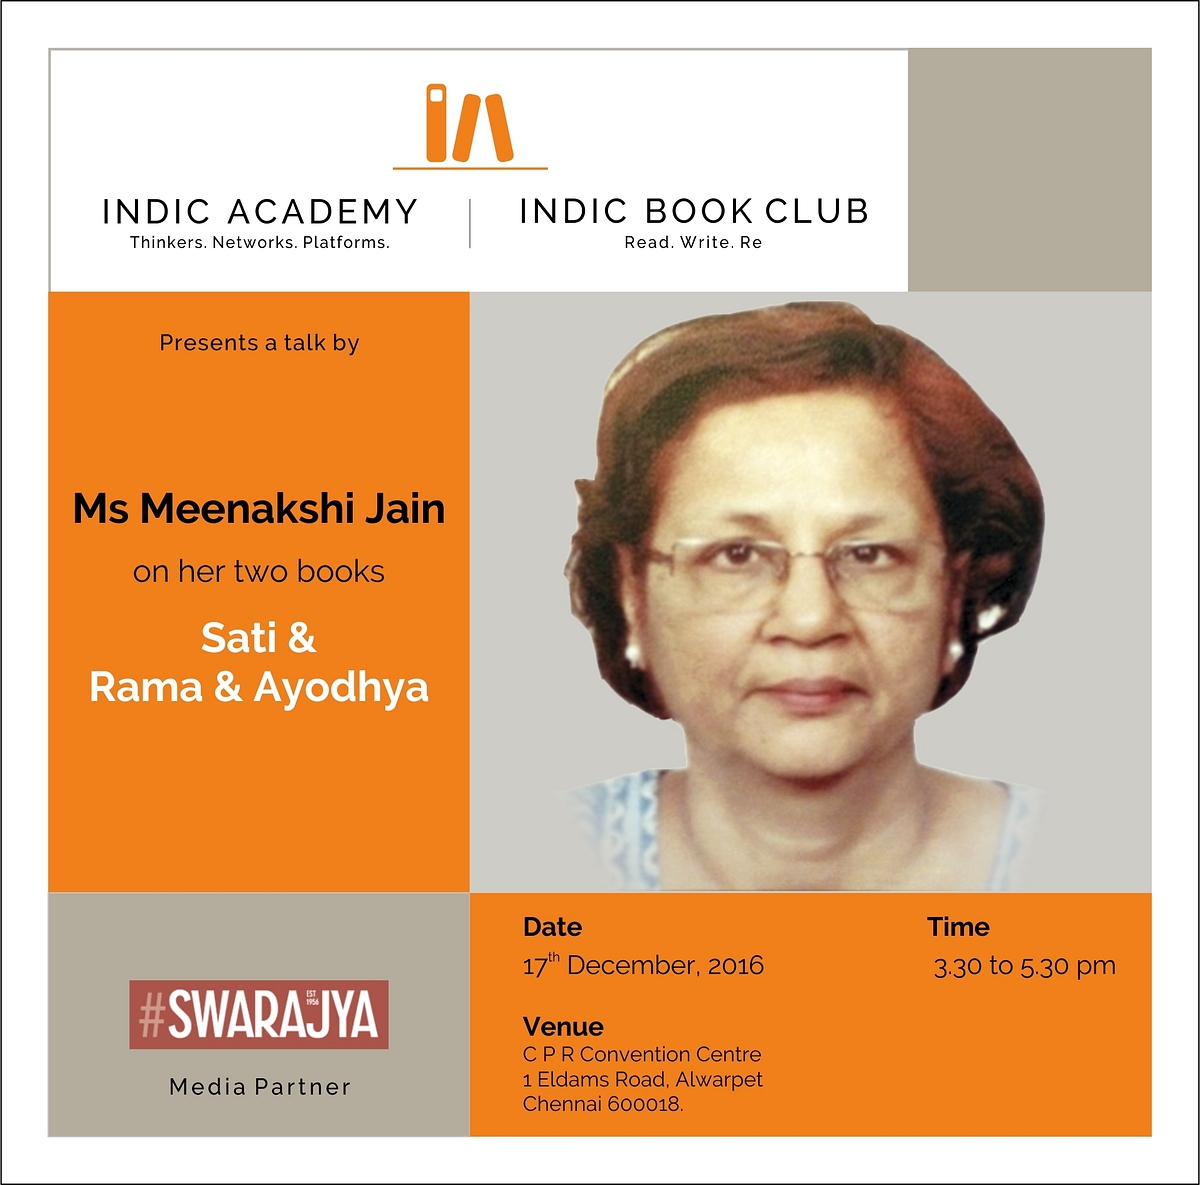 Indic Academy Chennai Event: Meenakshi Jain To Speak On Her Books Sati And Rama & Ayodhya